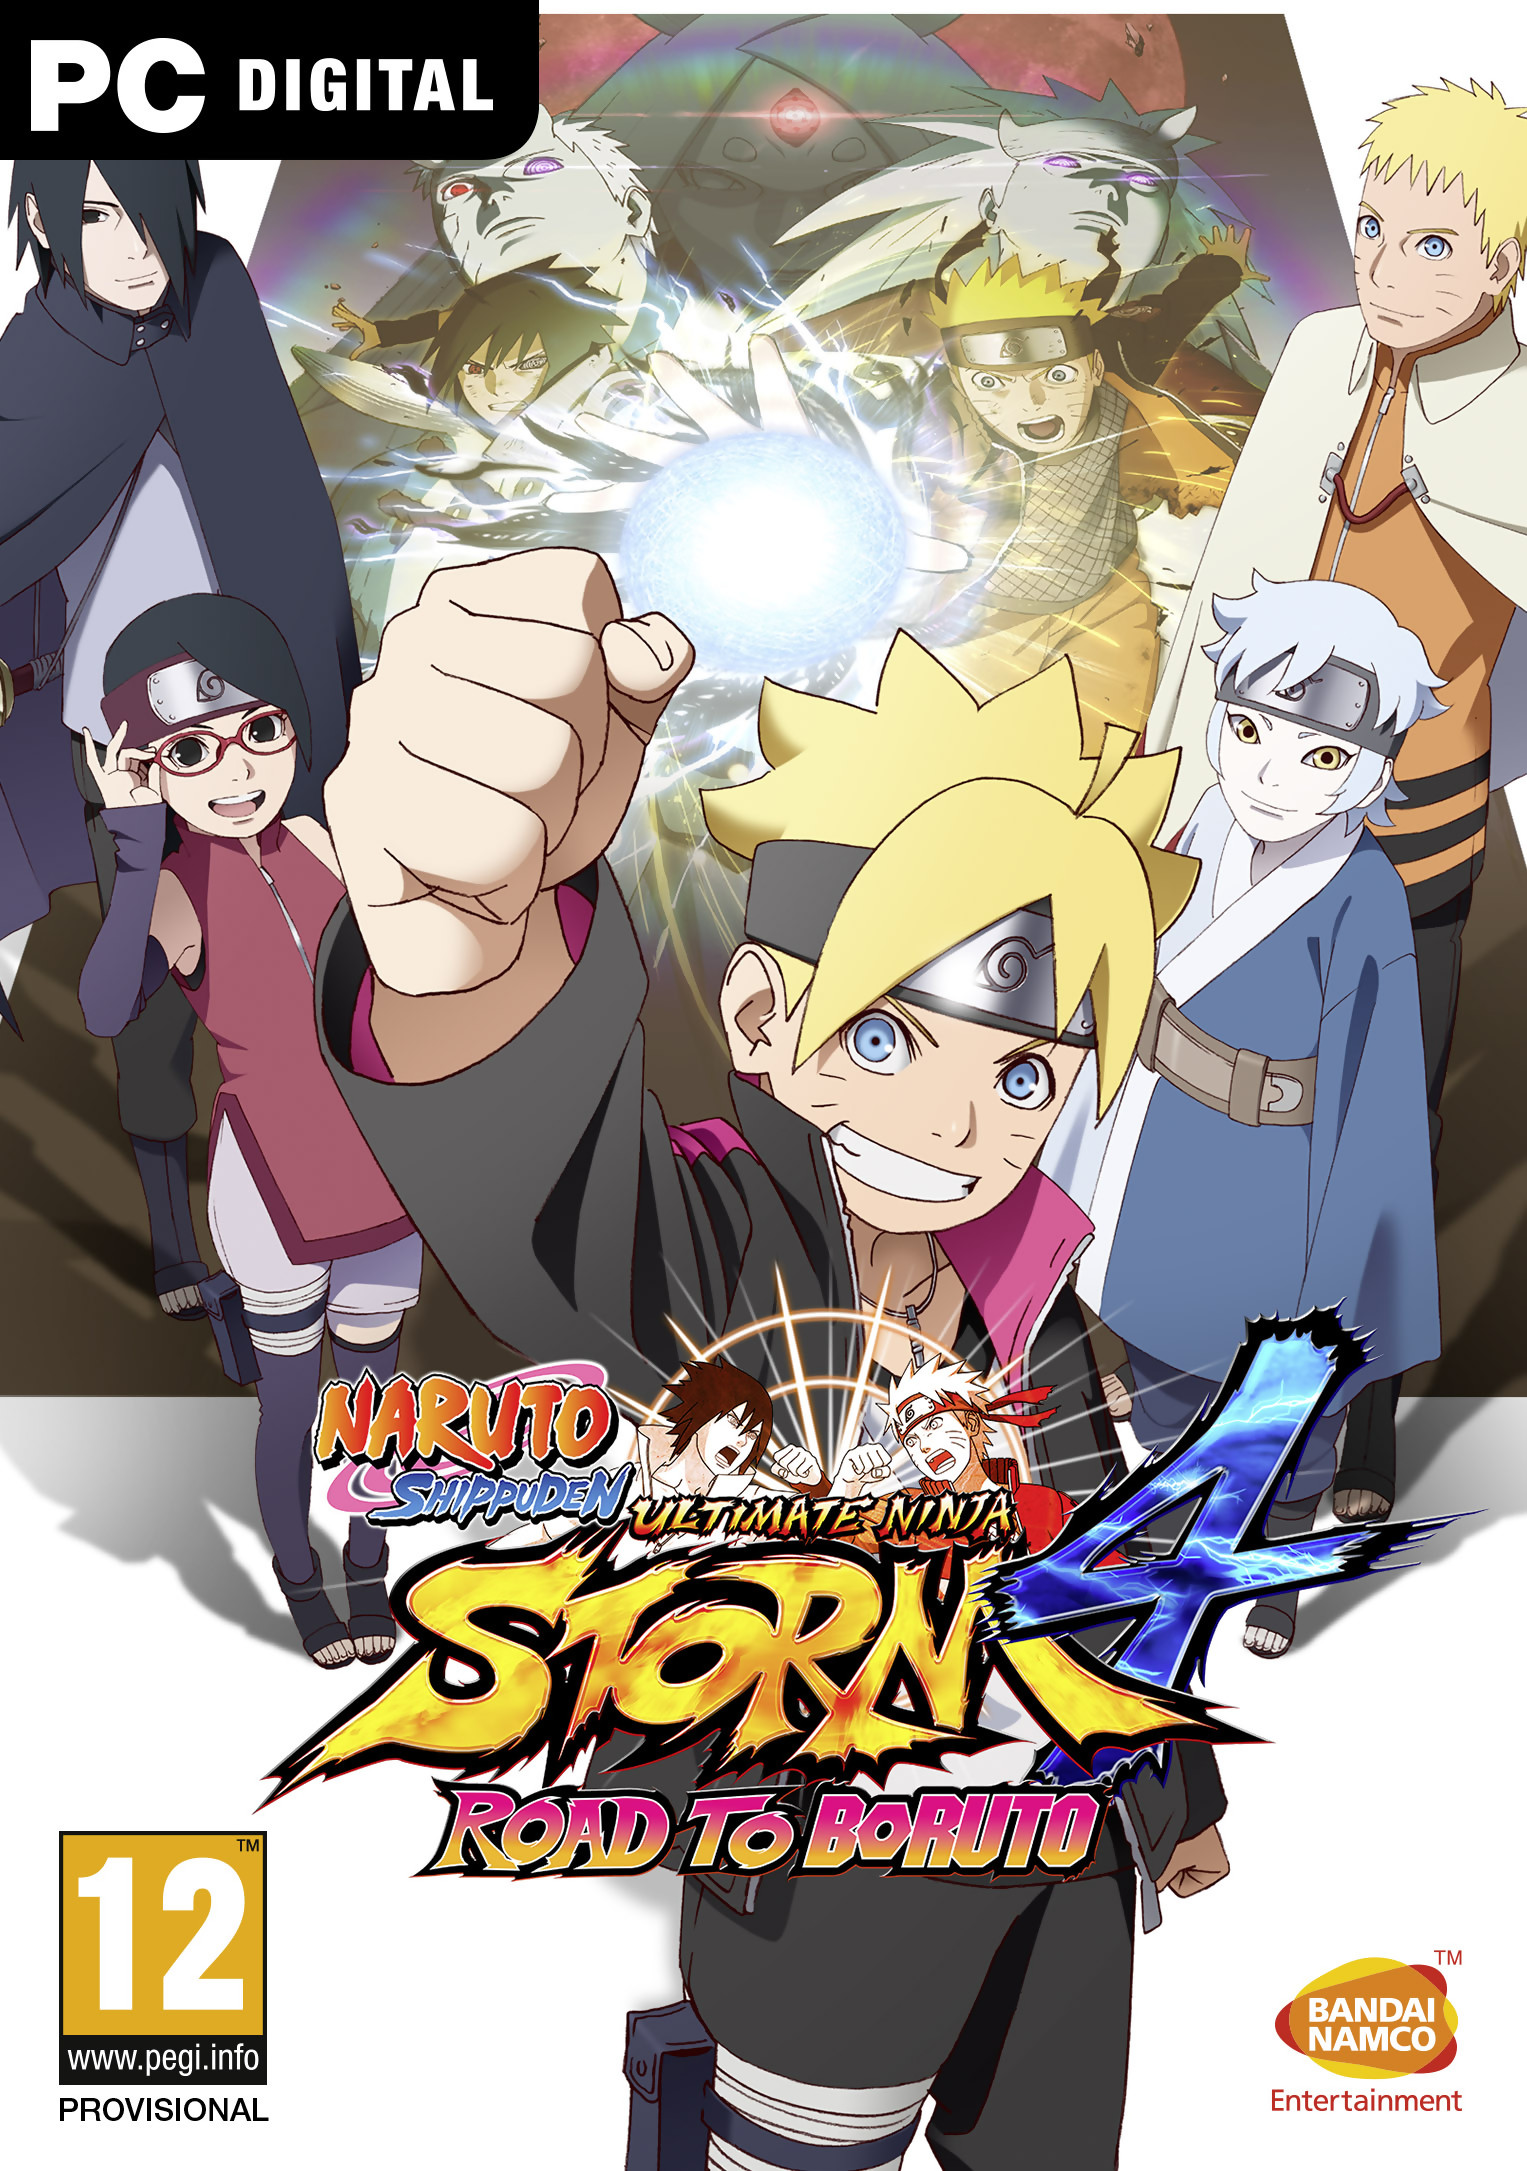 Quand sort le prochain Naruto Storm ?